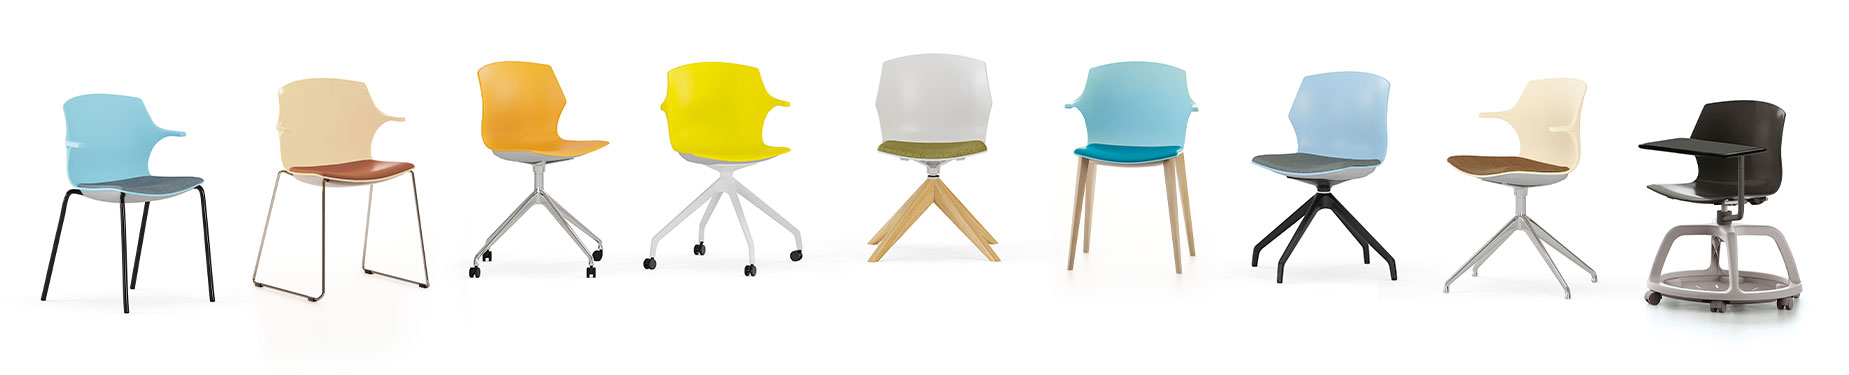 gamme chaises de bureau design